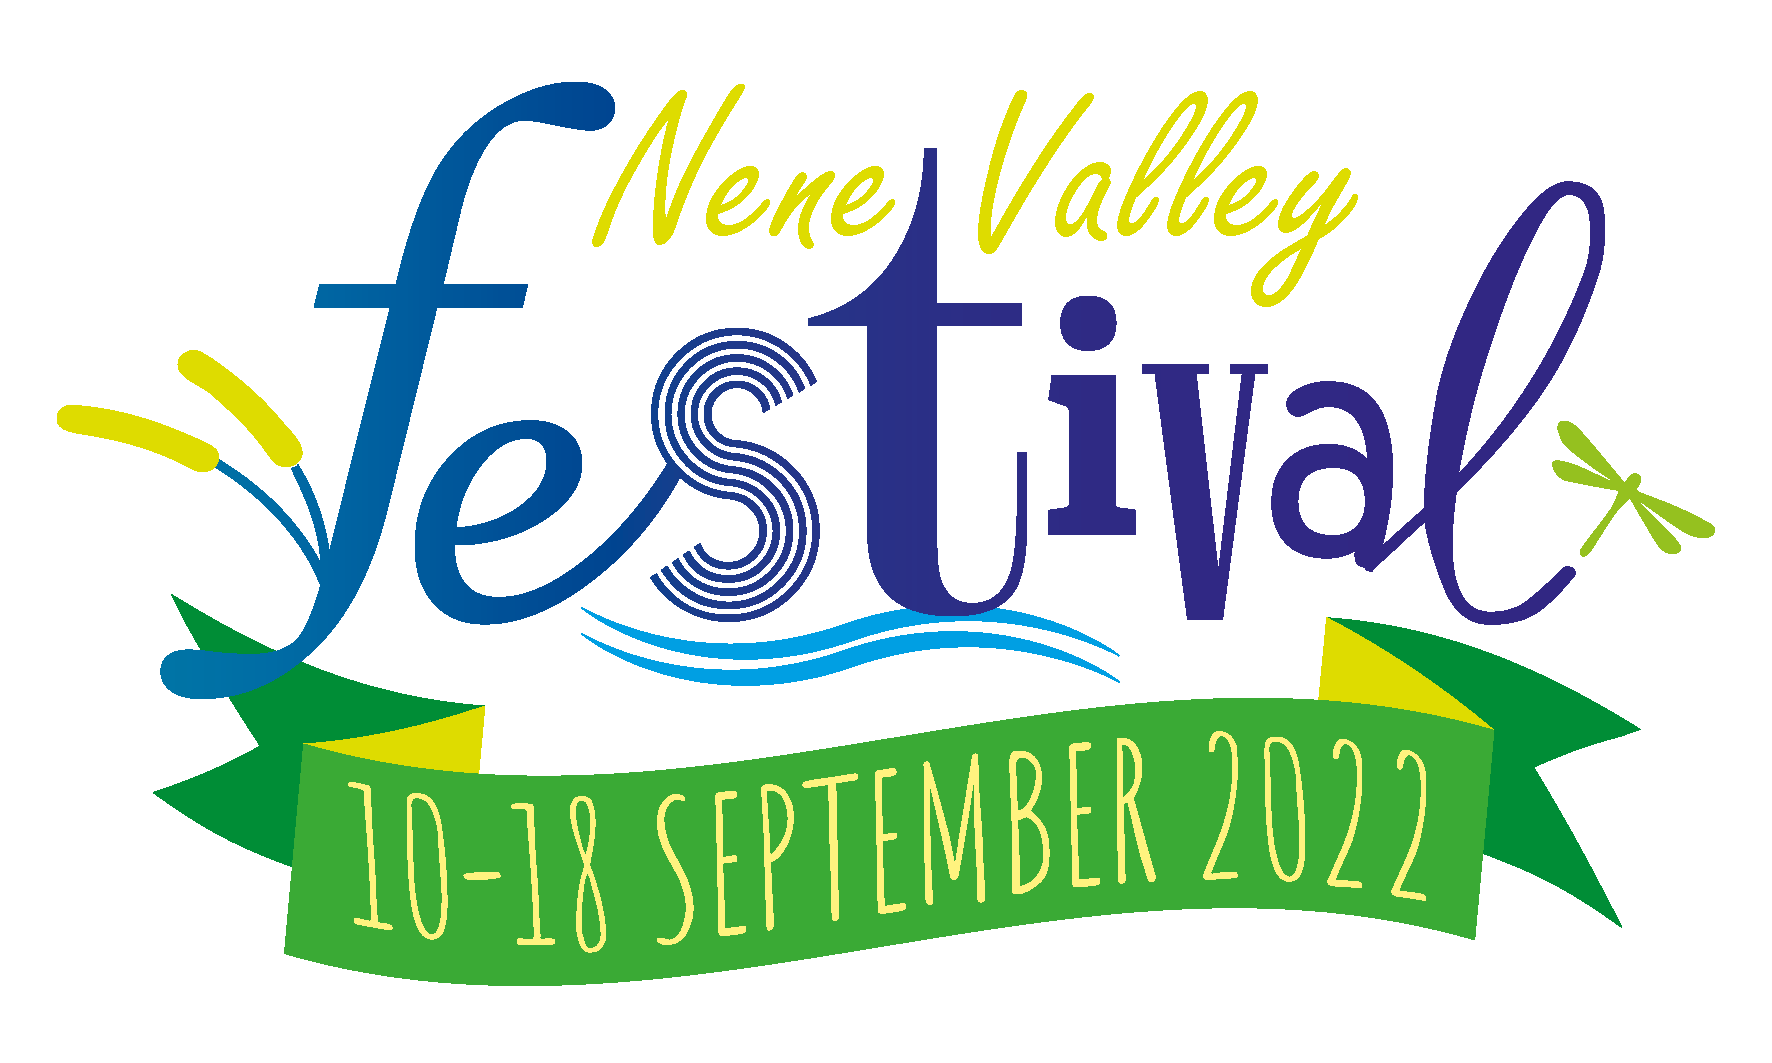 Nene Valley Festival logo and link